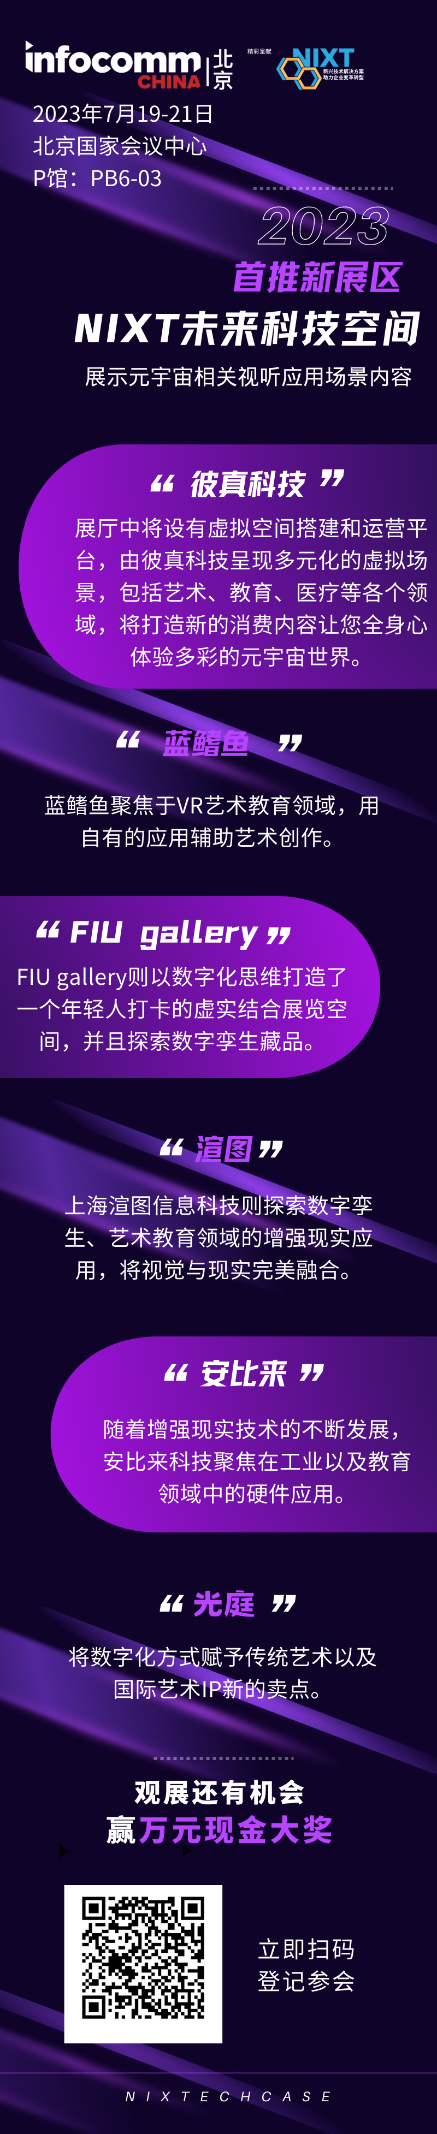 北京InfoComm China首次聚焦元宇宙，新推“NIXT未来科技空间”展区